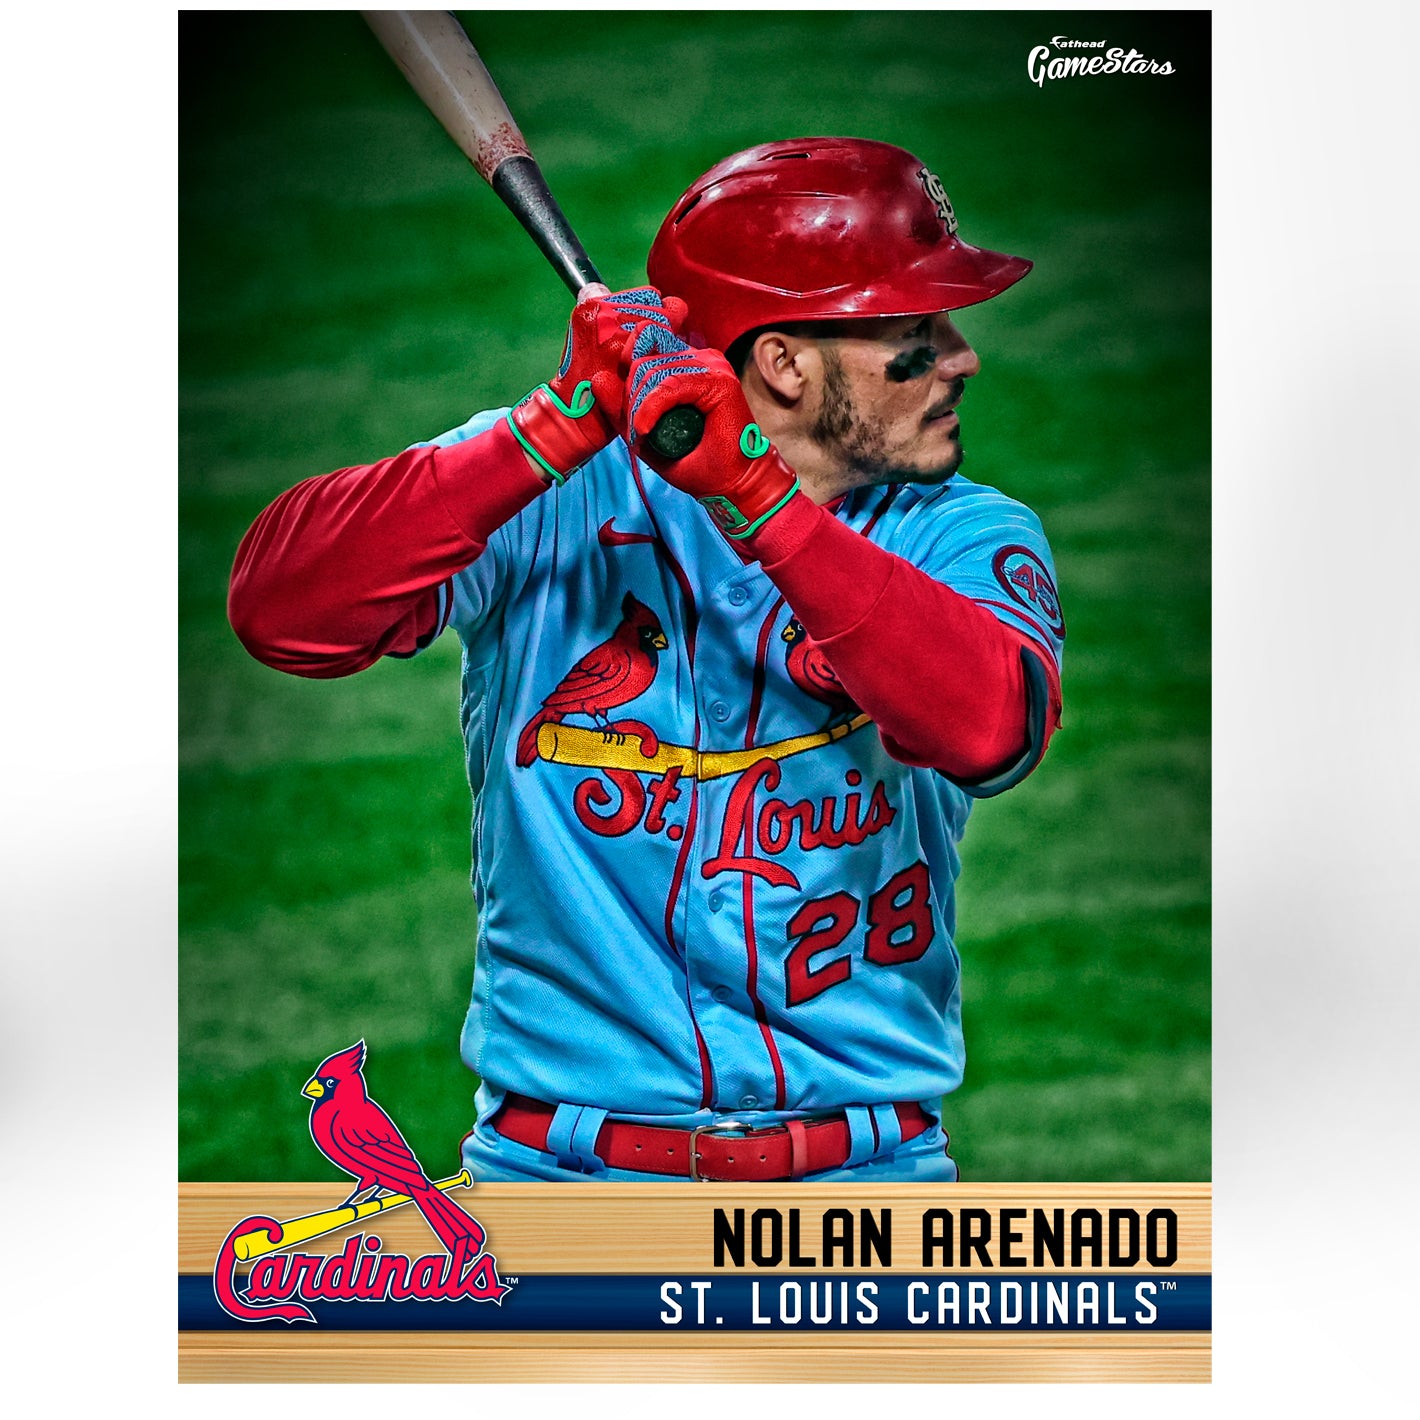 St. Louis Cardinals: Nolan Arenado 2021 GameStar - Officially Licensed –  Fathead